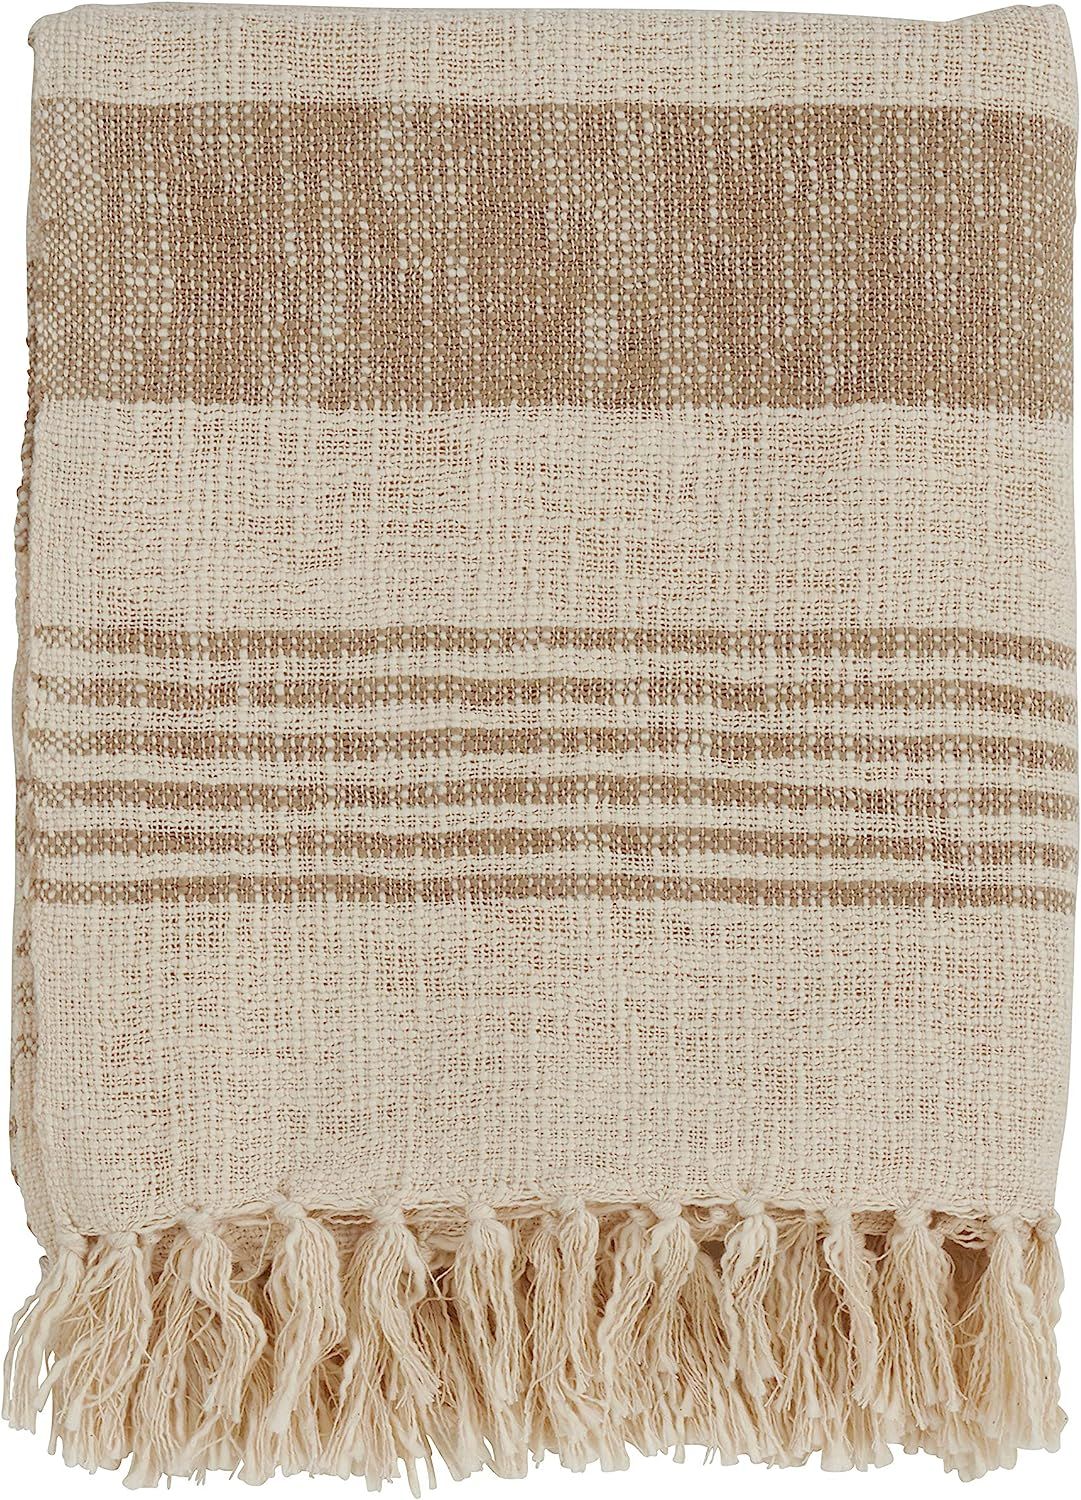 SARO LIFESTYLE Cotton Throw with Striped and Tasseled Design | Amazon (US)